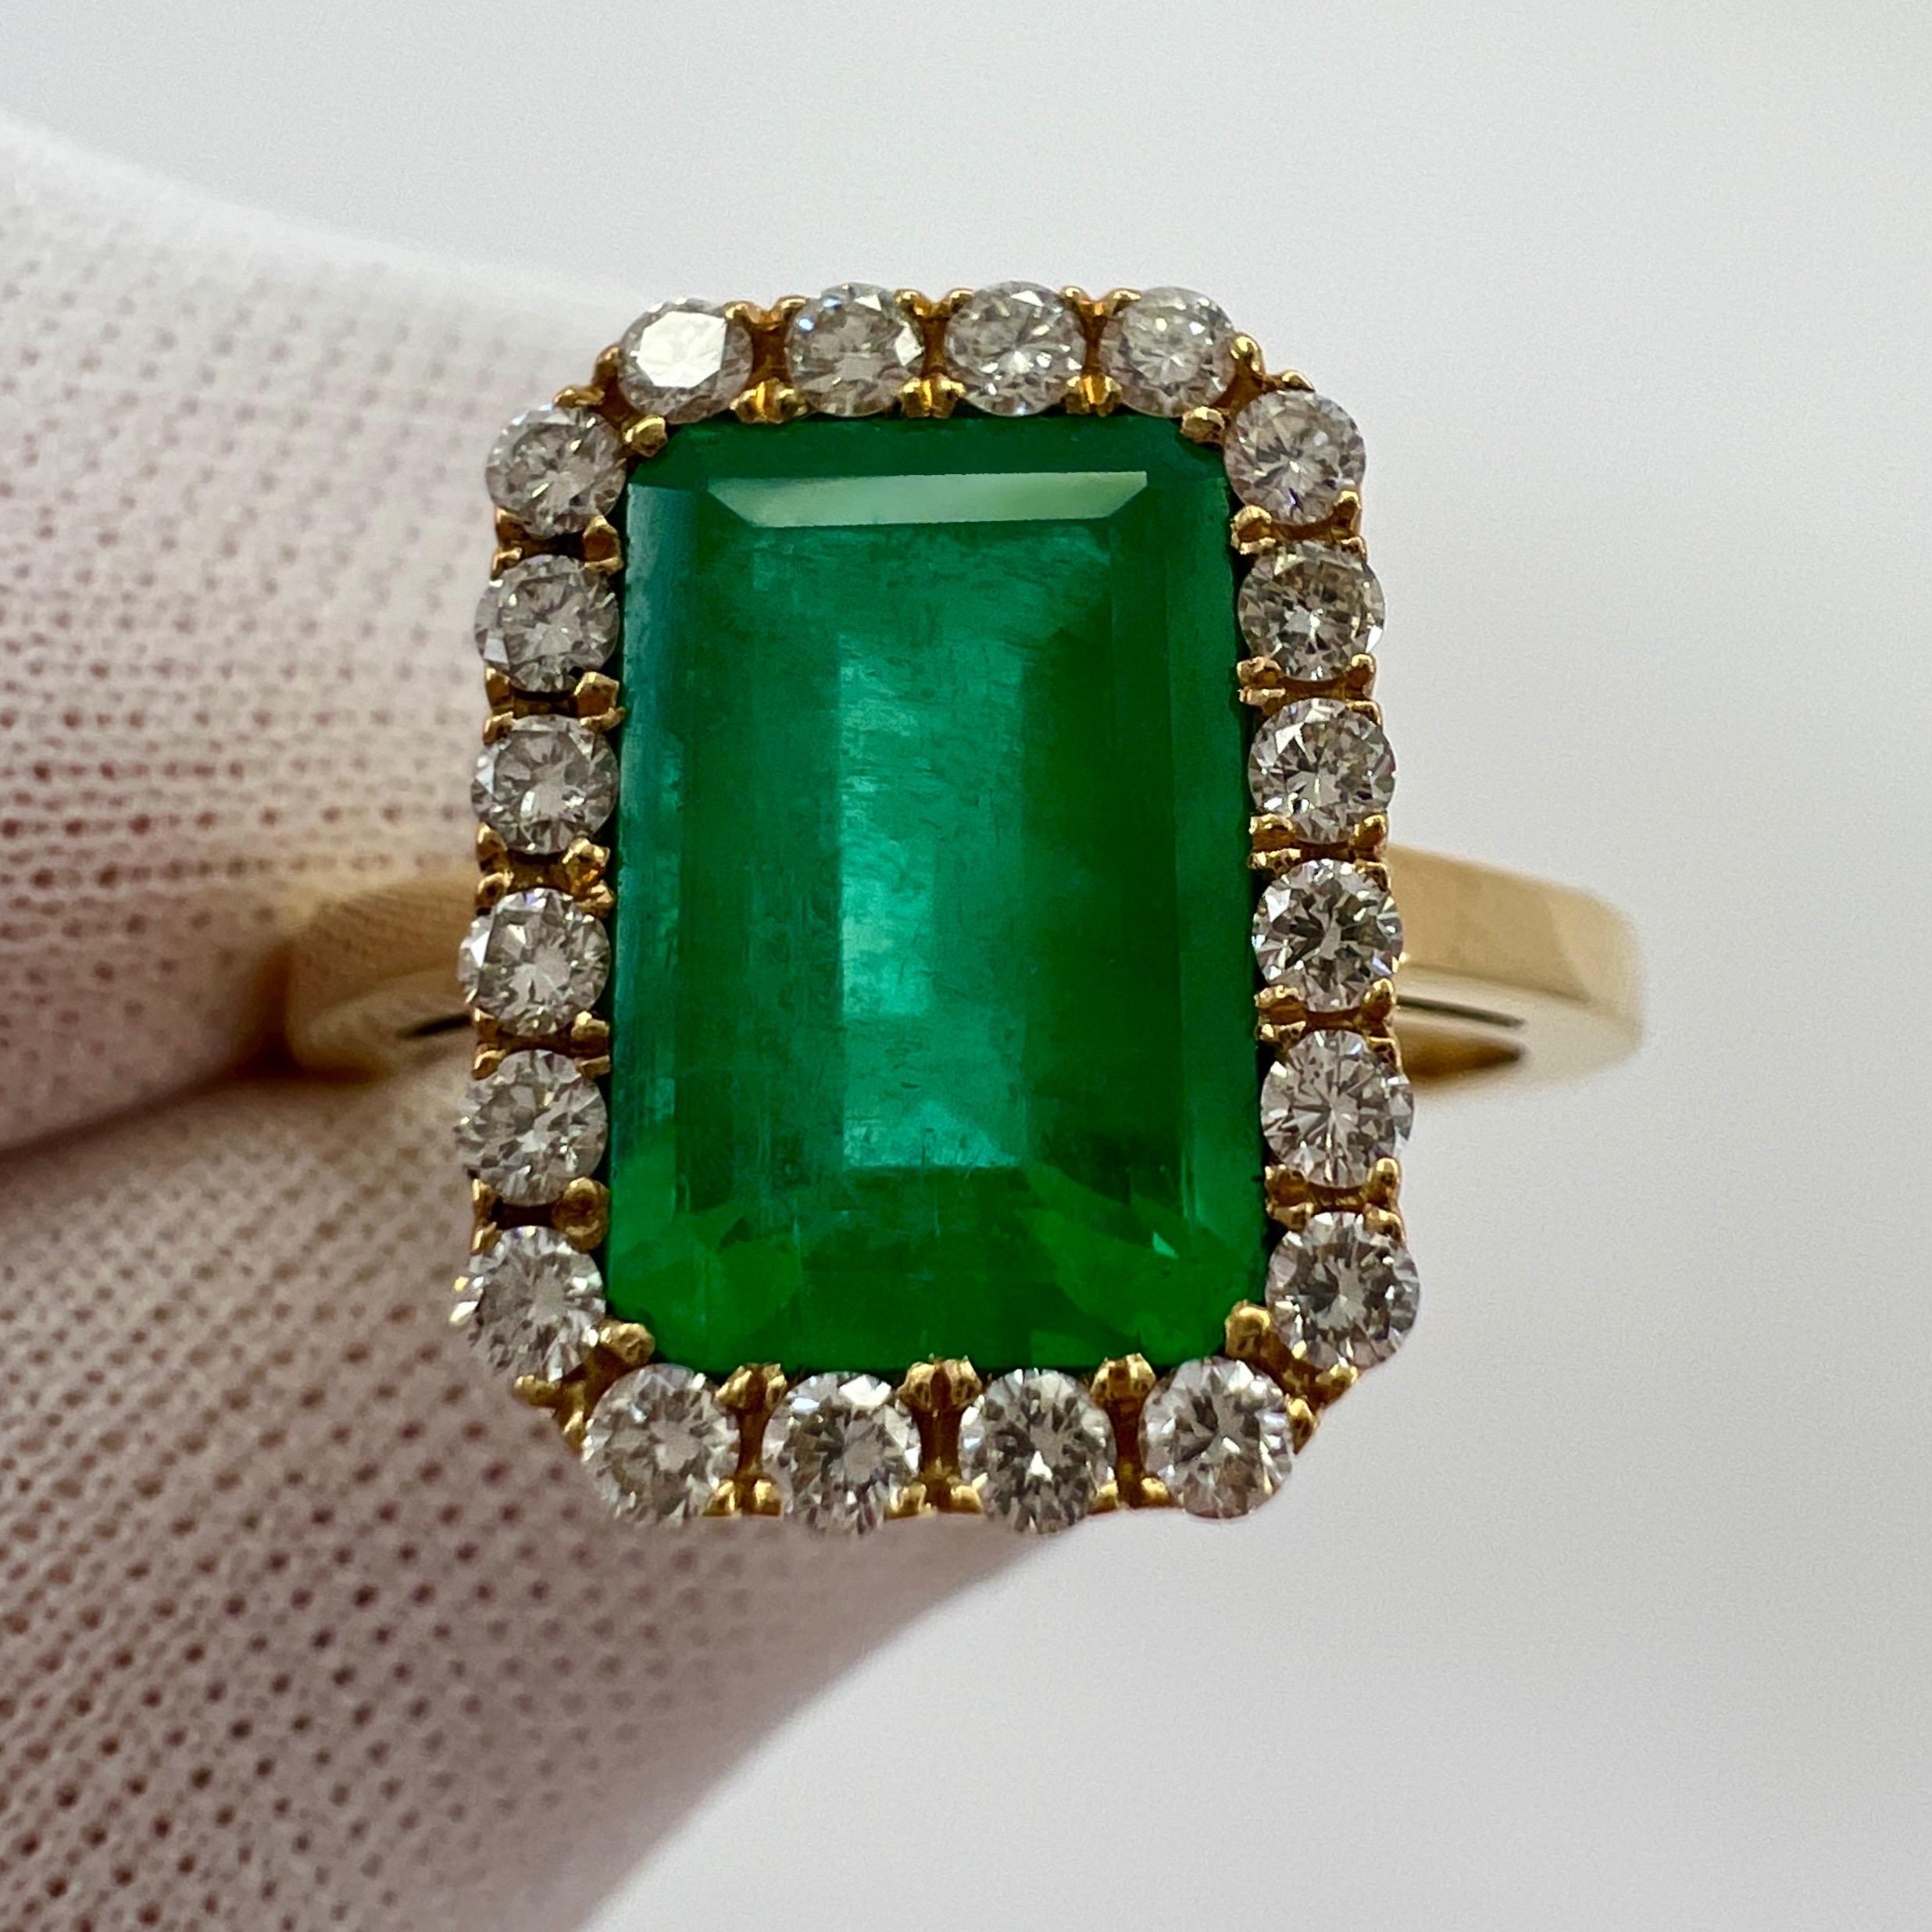 Fein GIA zertifiziert Vivid Green kolumbianischen Smaragd & Diamant 18k Gelbgold Halo Ring. 3,06 Karat Gesamtgewicht.

Großer Smaragd von 2,72 Karat mit atemberaubend intensiver, lebhafter grüner Farbe und sehr guter Reinheit.

Dieser Stein hat